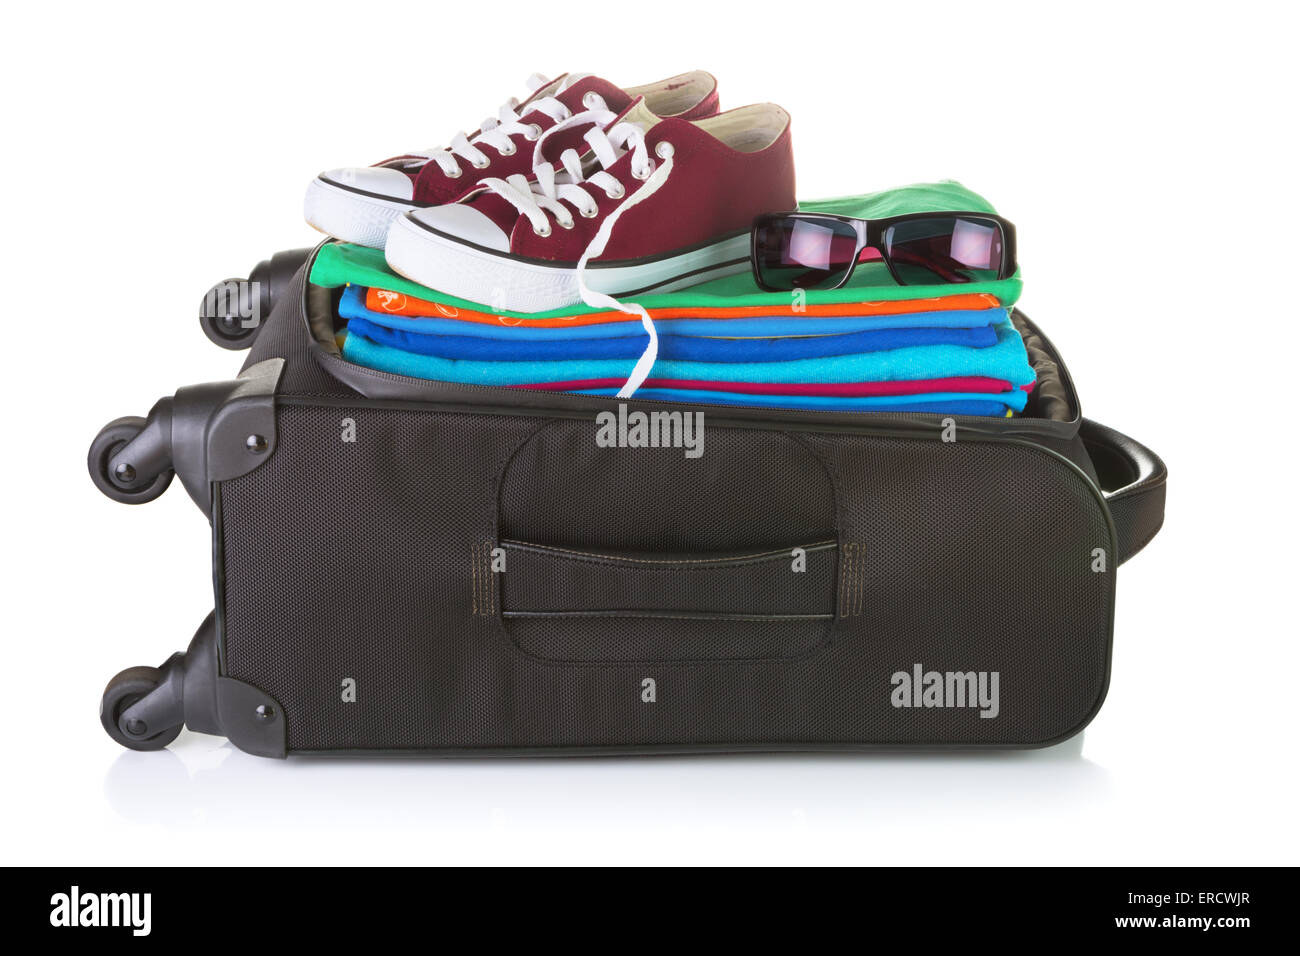 Bolsa de deporte y zapatillas de deporte Fotografía de stock - Alamy